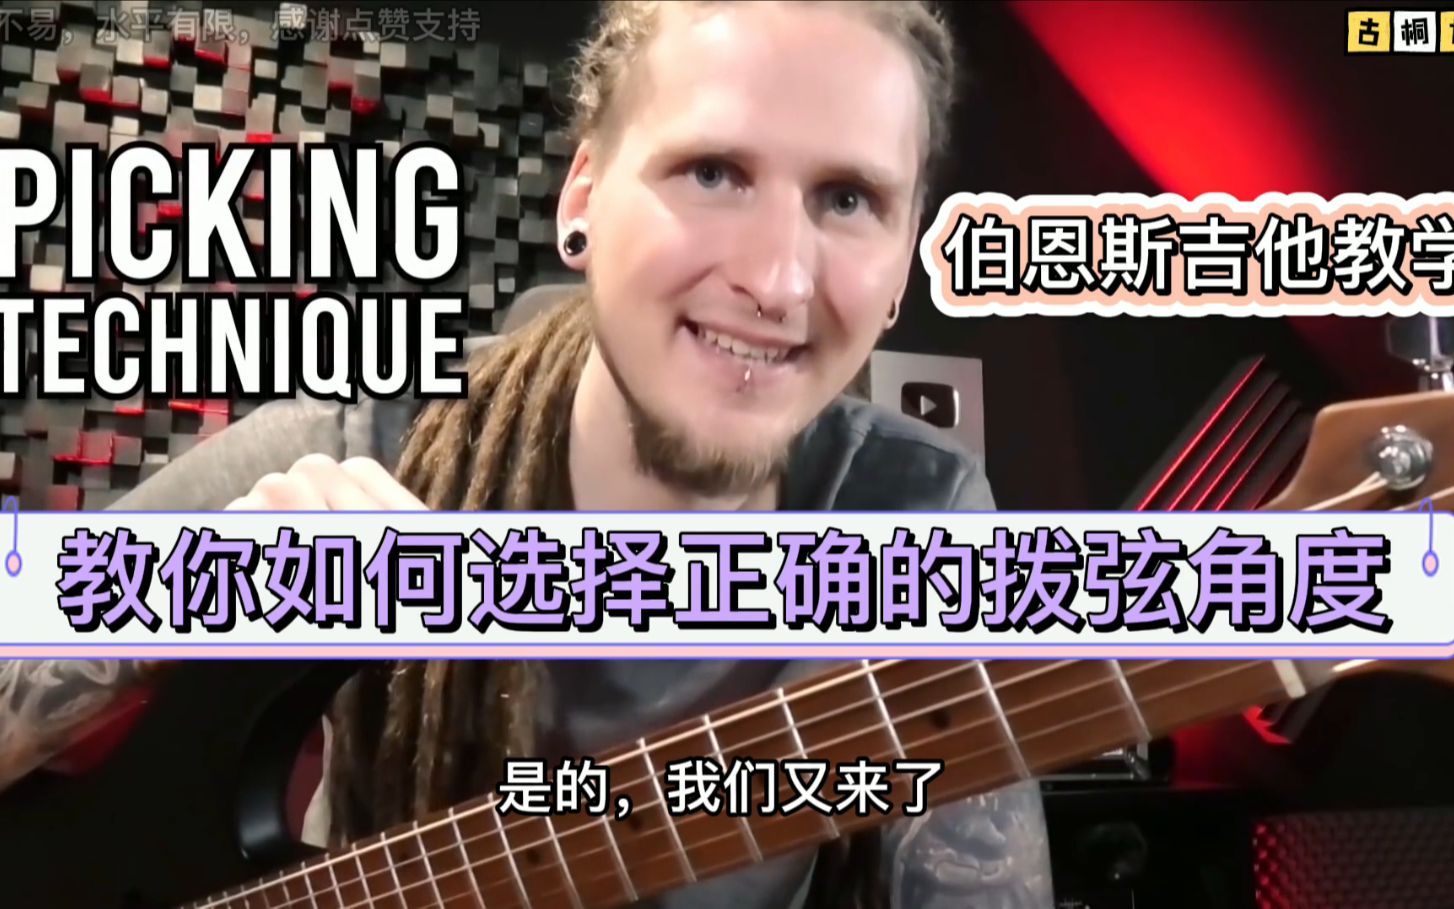 伯恩斯吉他教学| 教你如何选择正确的拨弦角度《中文字幕》